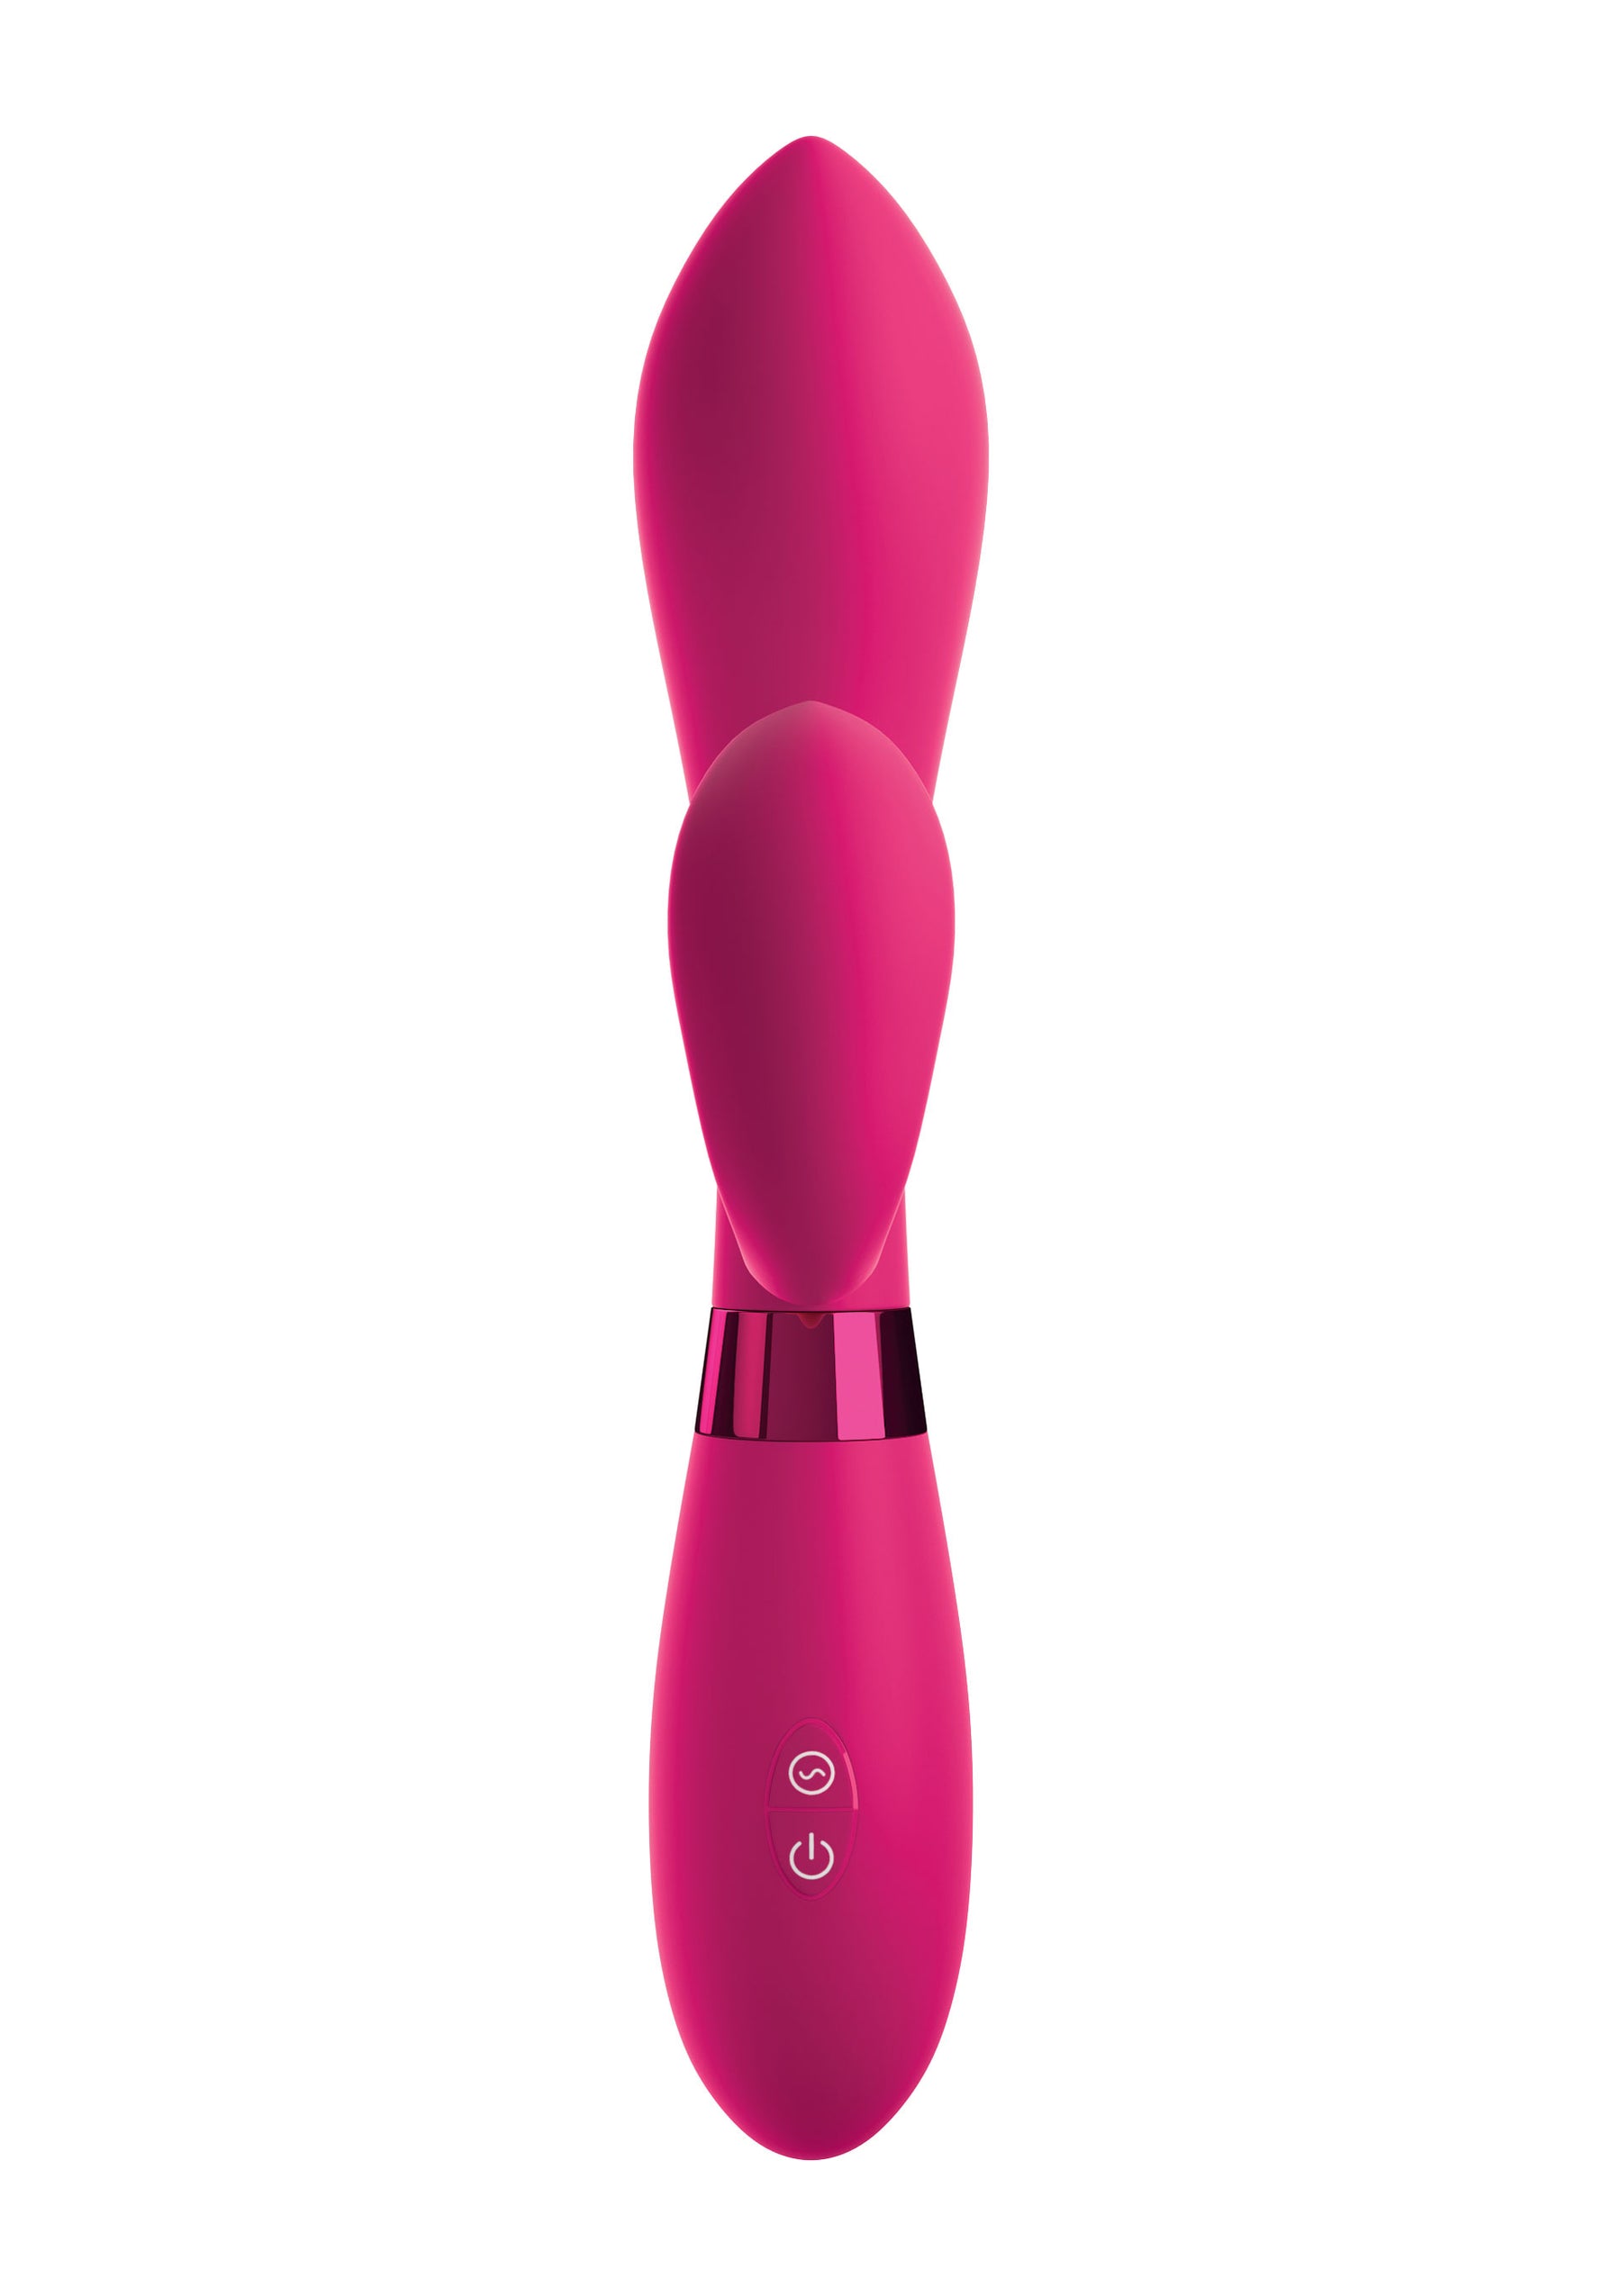 OMG Mood Silicone Vibrator-erotic-world-munchen.myshopify.com